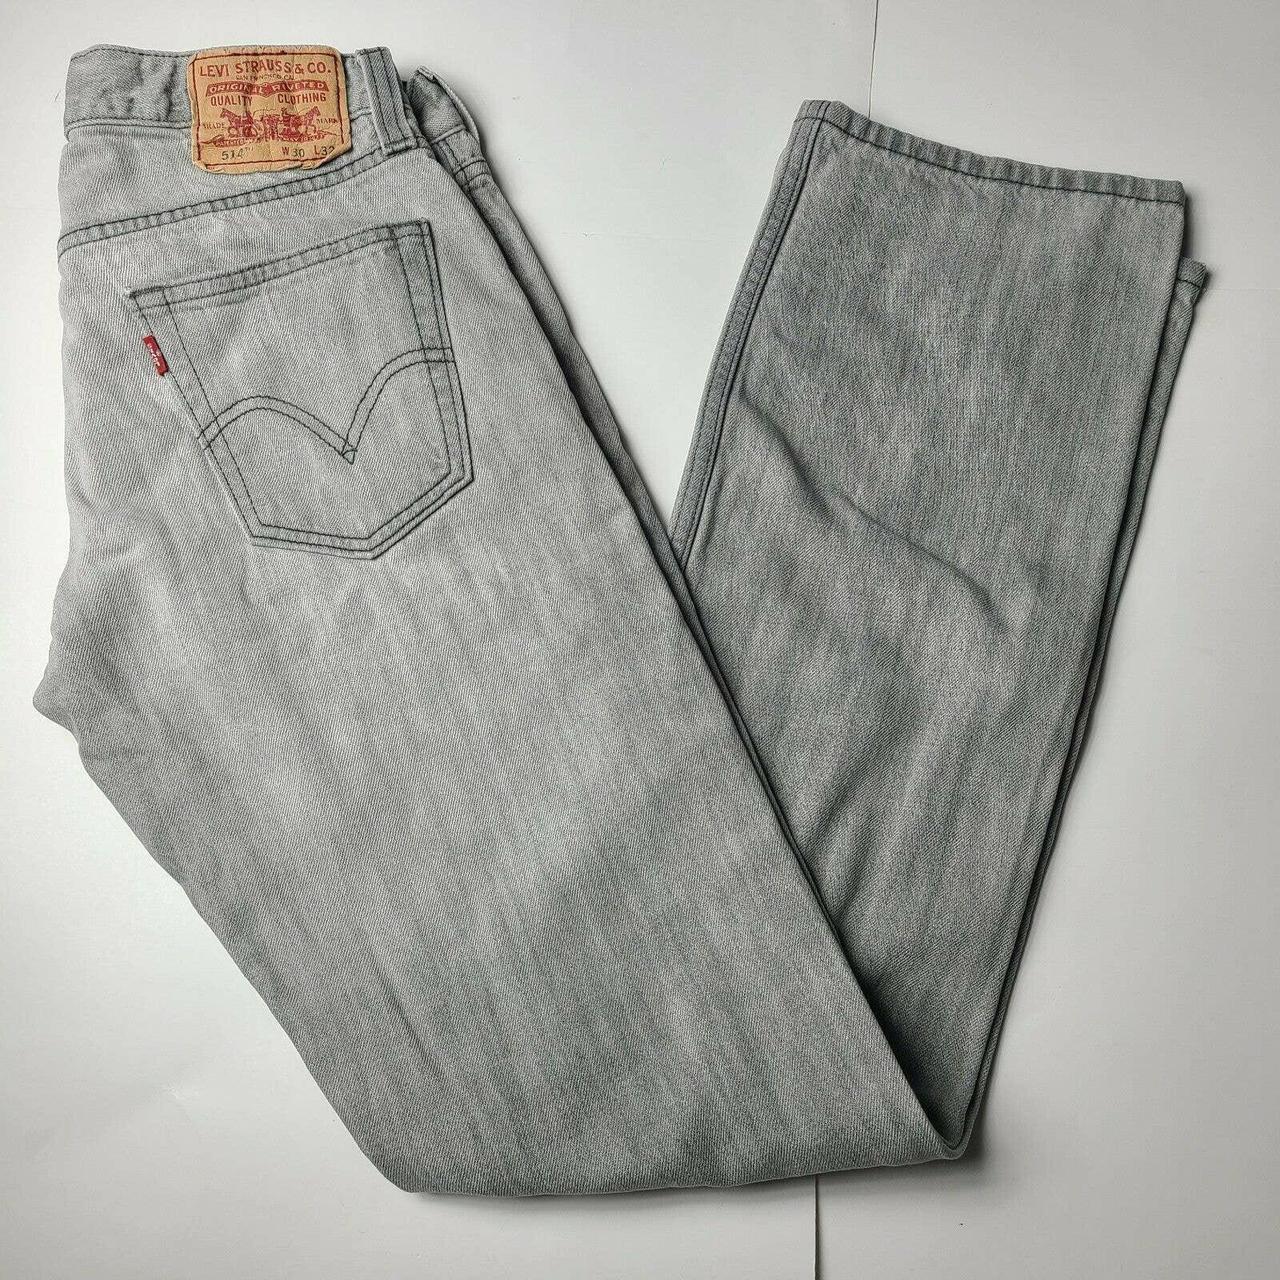 Levi's 514 Fit Gray Denim Jeans Men's Size... - Depop